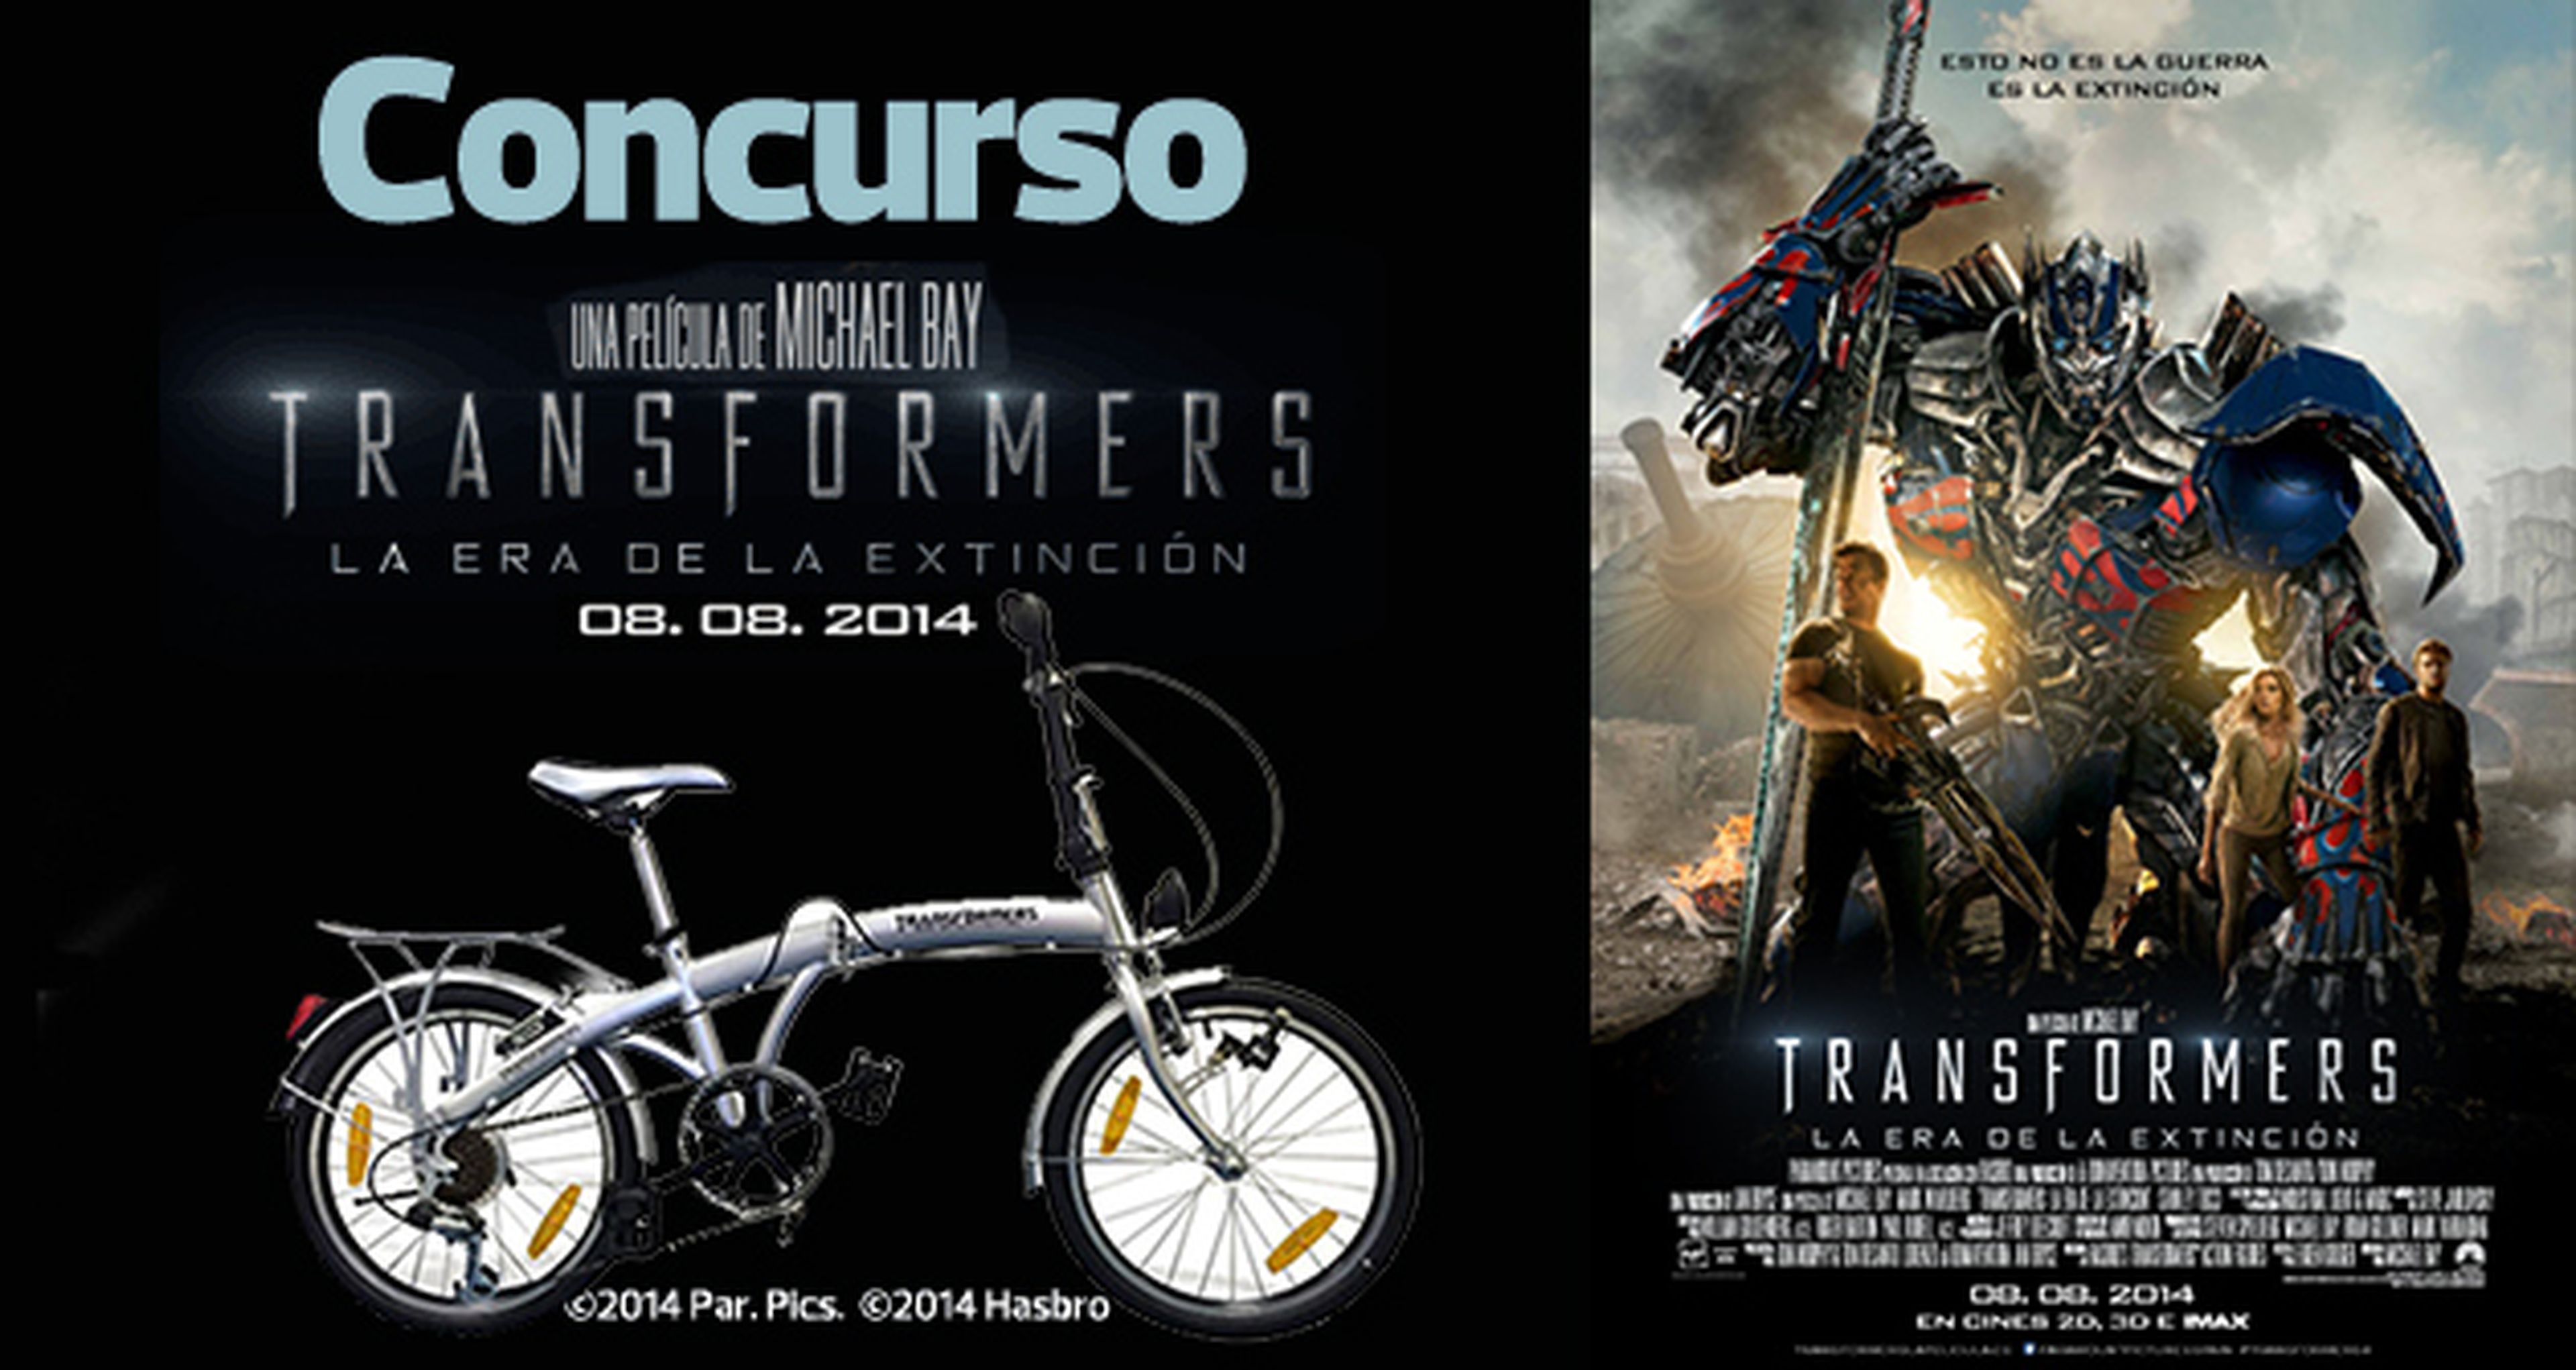 Concurso Transformers La era de la extinción: ¡Gana una bici de edición especial!